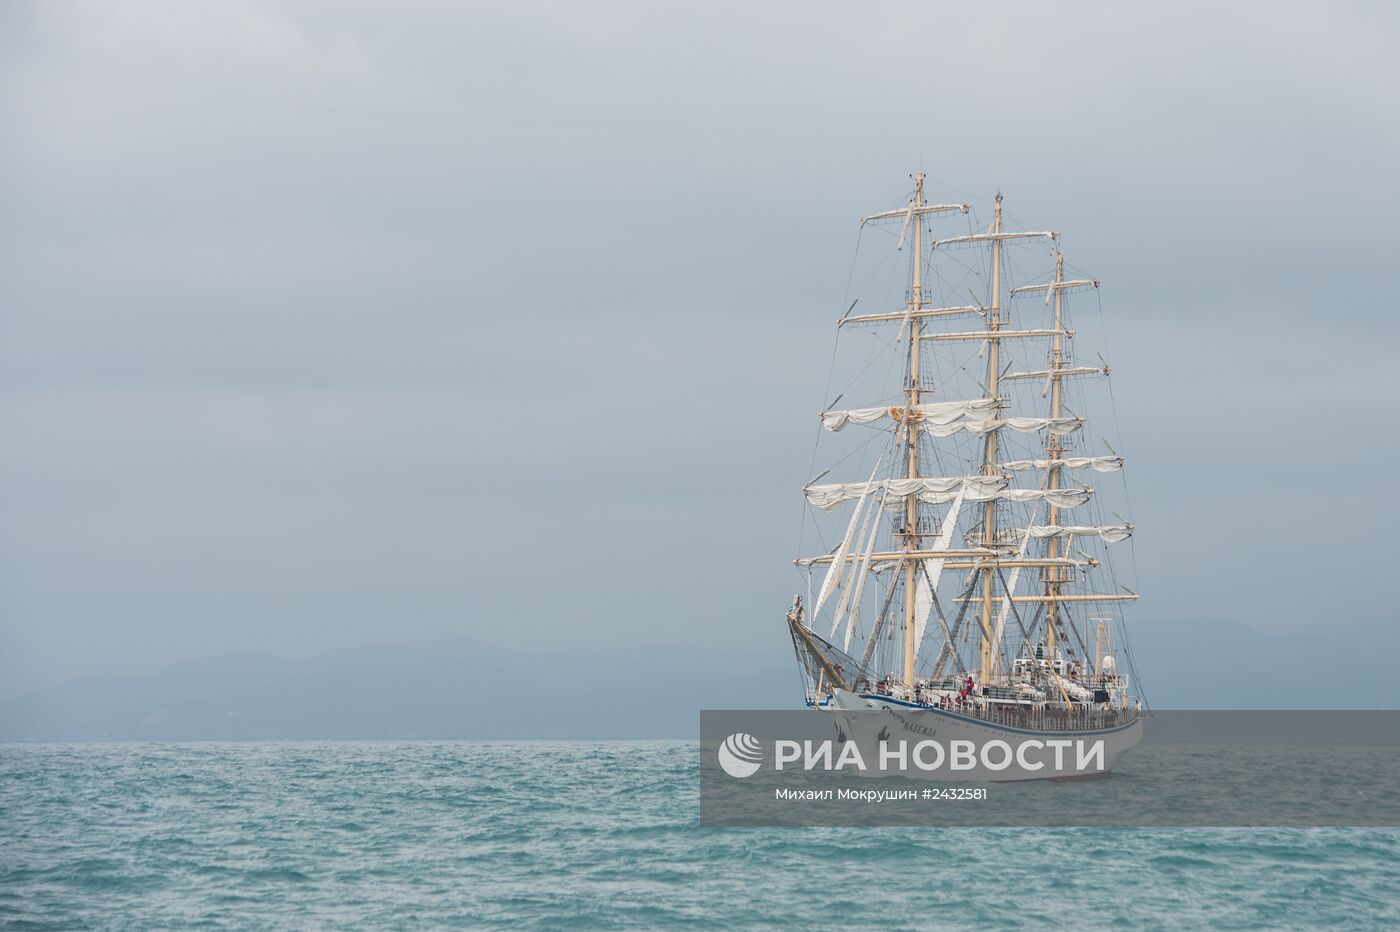 Черноморская регата больших парусников в Сочи